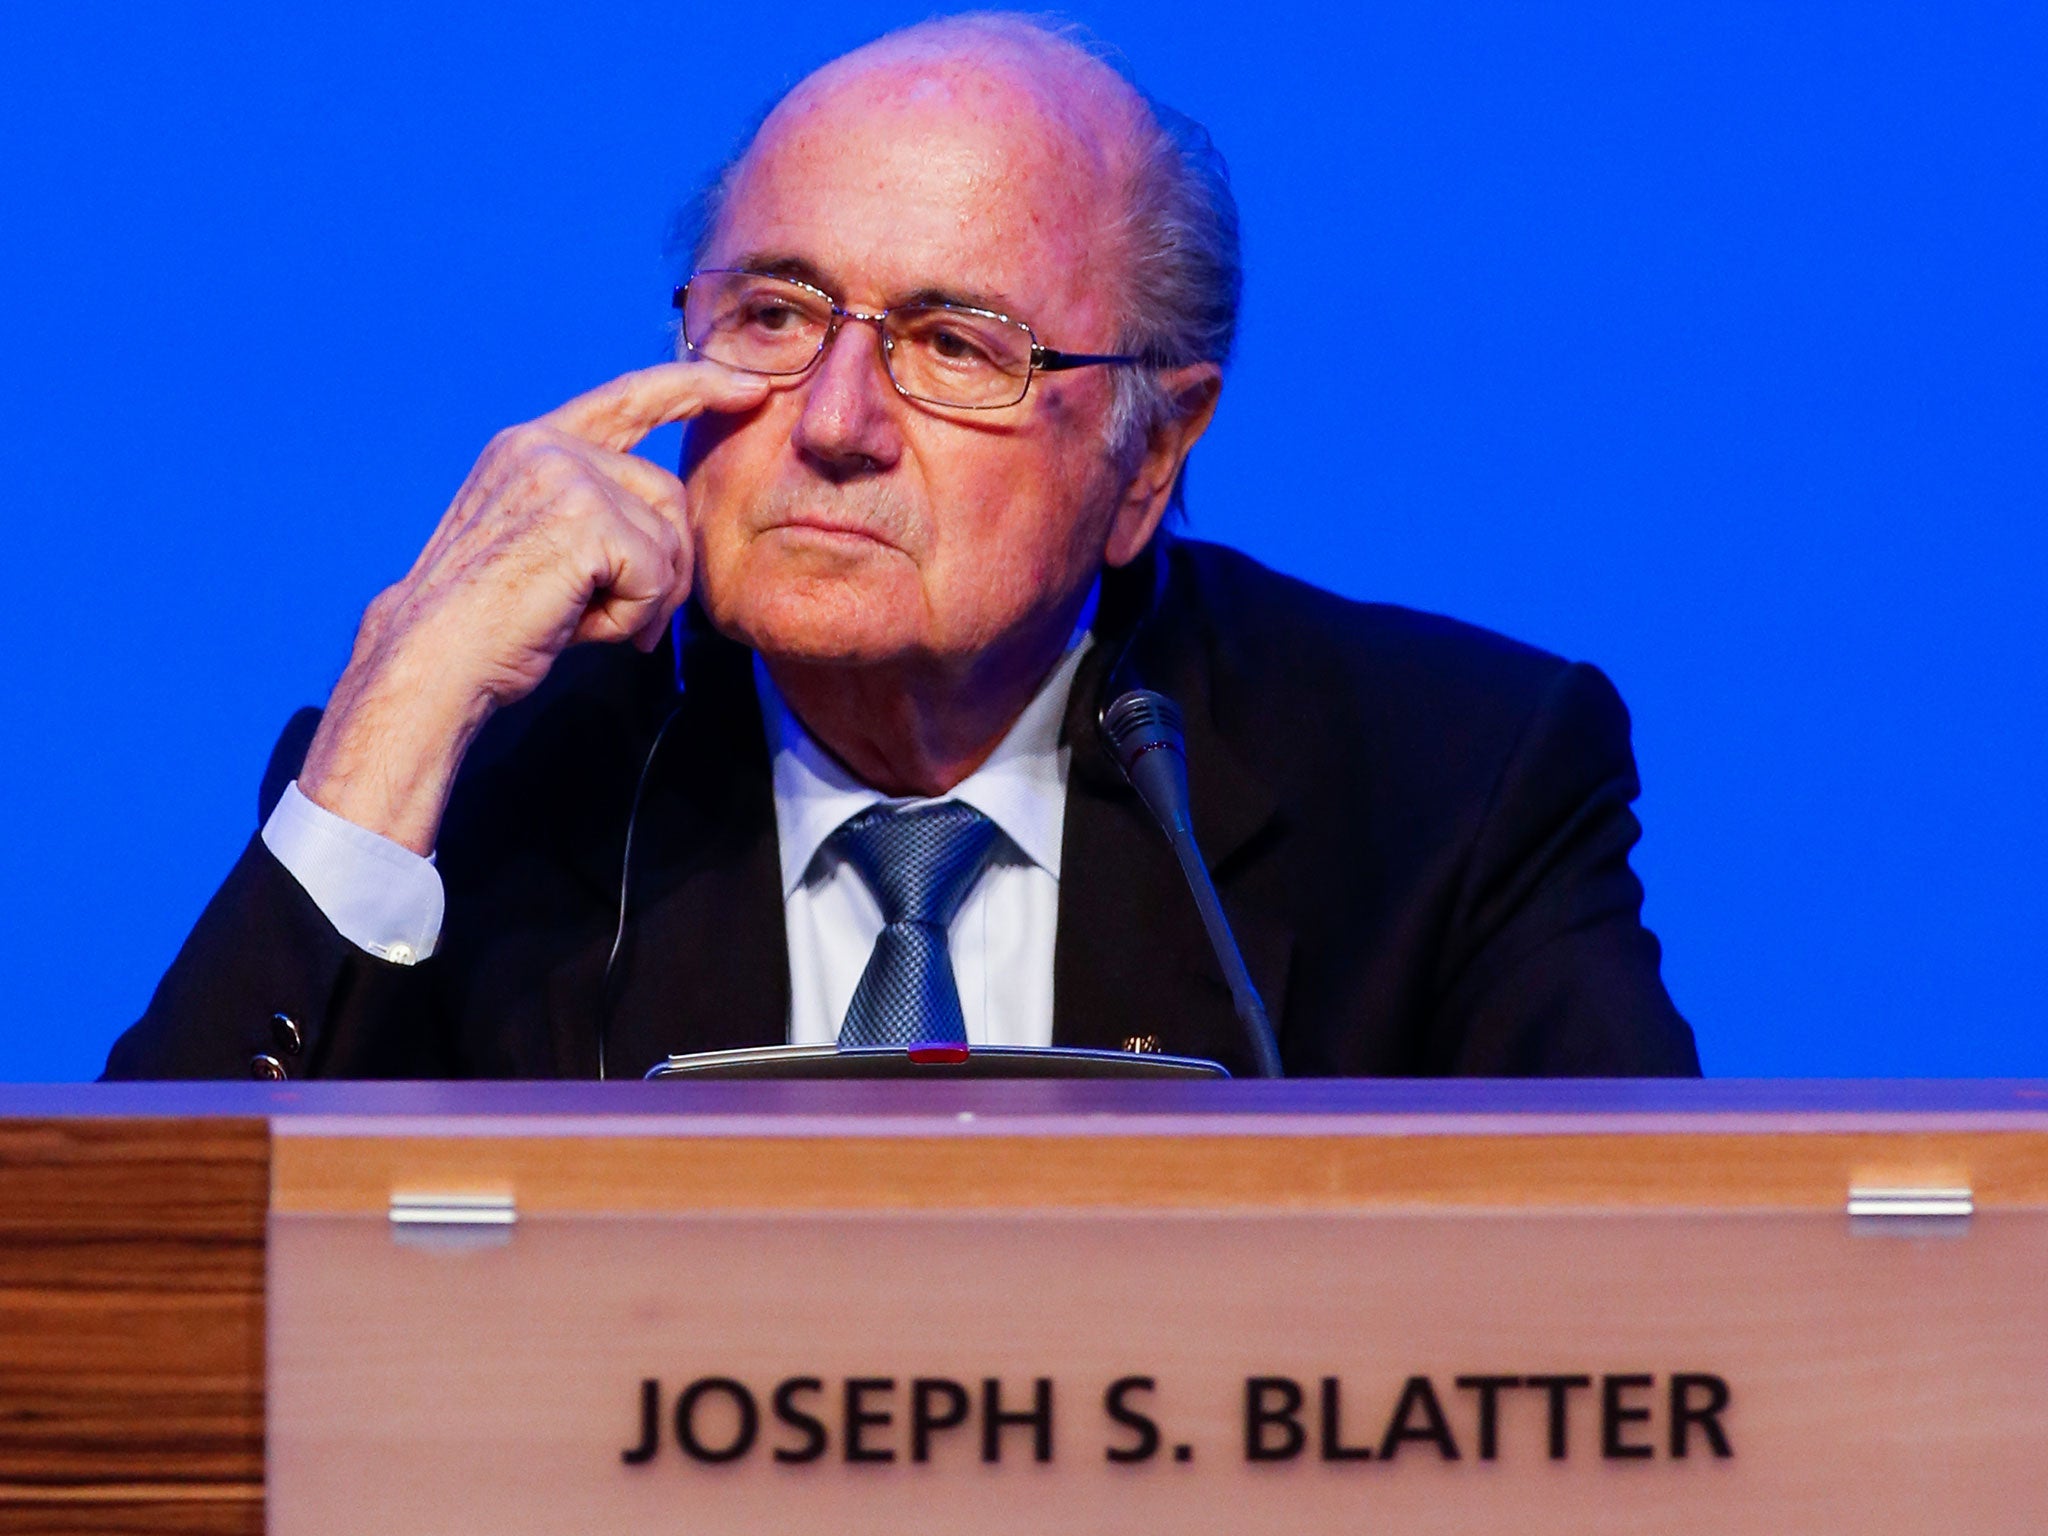 The FIFA president Sepp Blatter